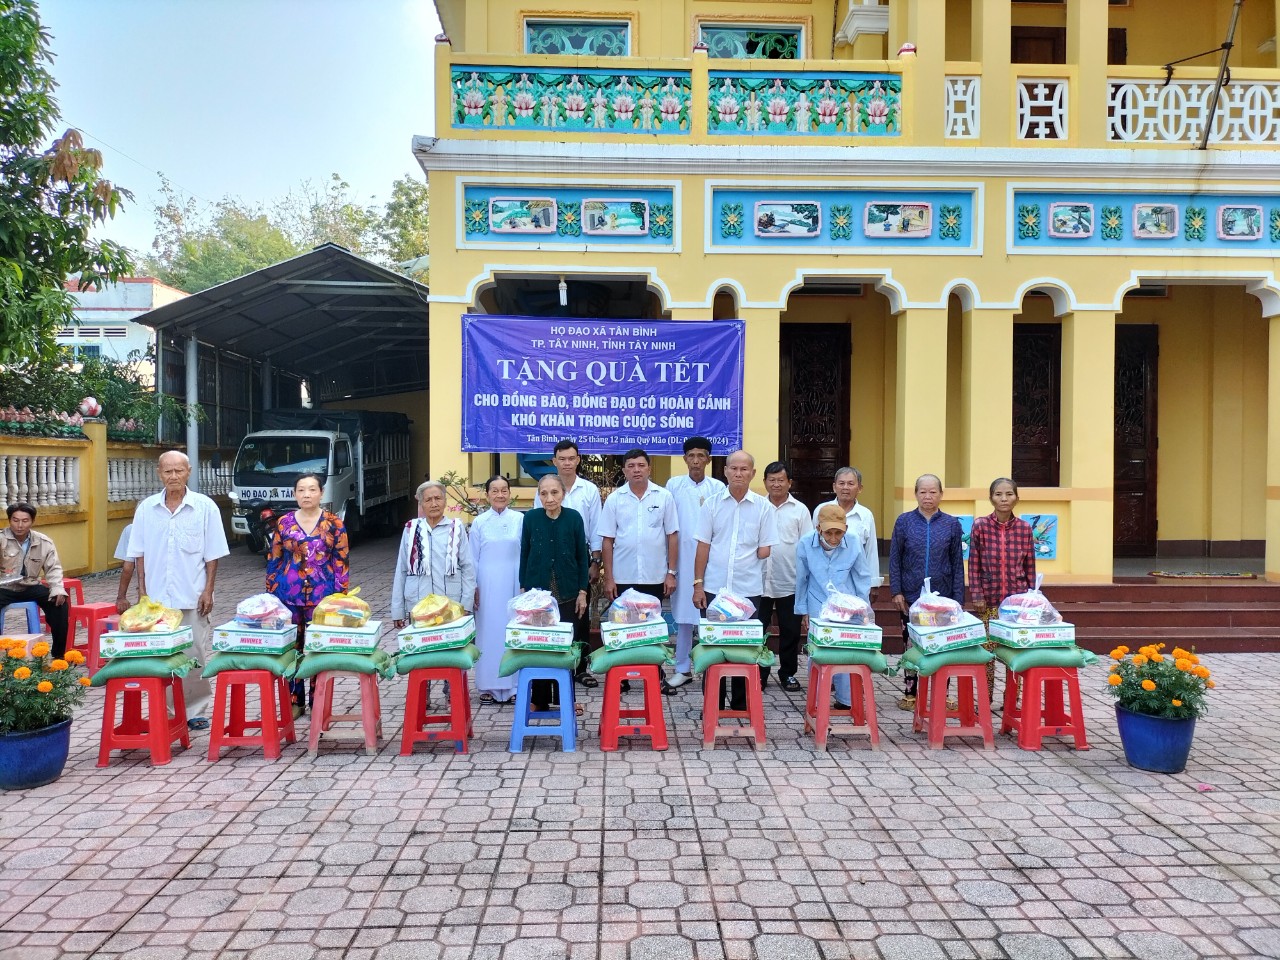 Quang cảnh trao quà tại Điện thờ Phật Mâu xã Tân Bình